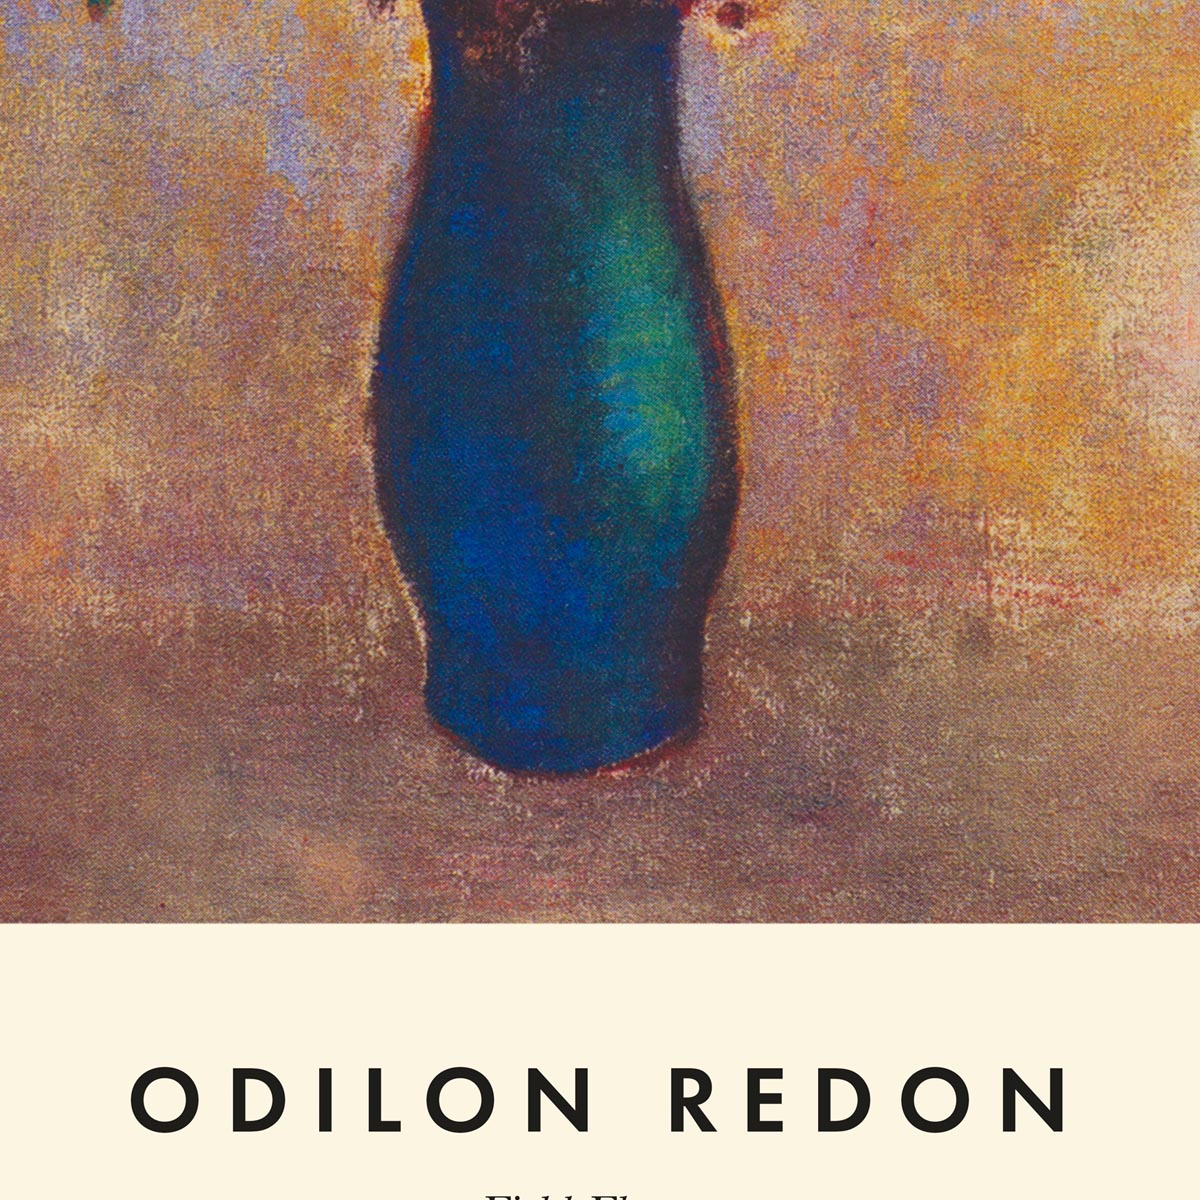 Field Flowers by Odilon Redon